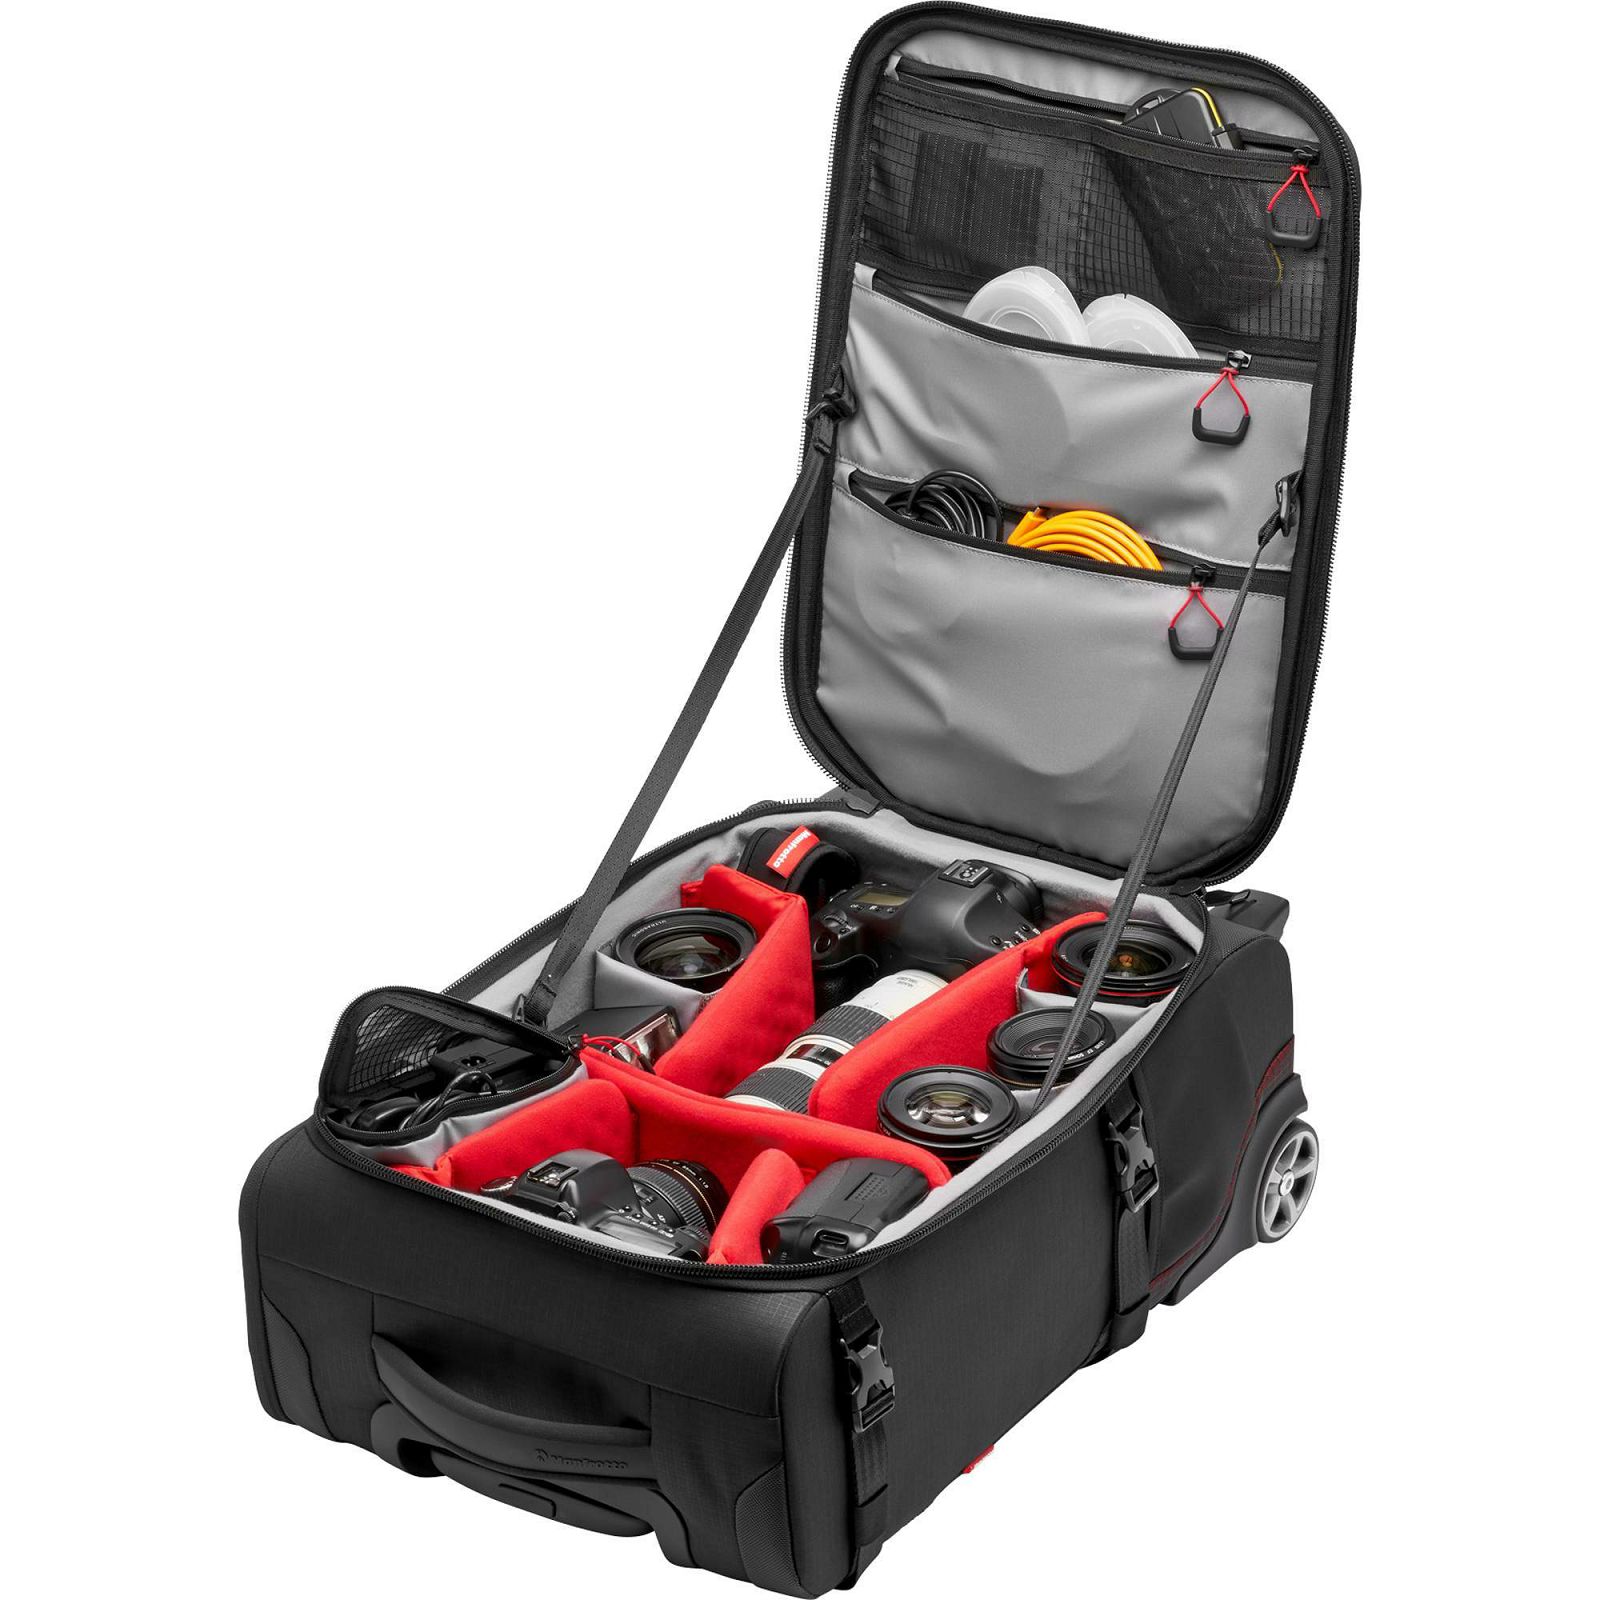 Manfrotto Pro Light Reloader Air-55 PL Carry-On Camera Roller Bag Black kufer za foto opremu (MB PL-RL-A55)